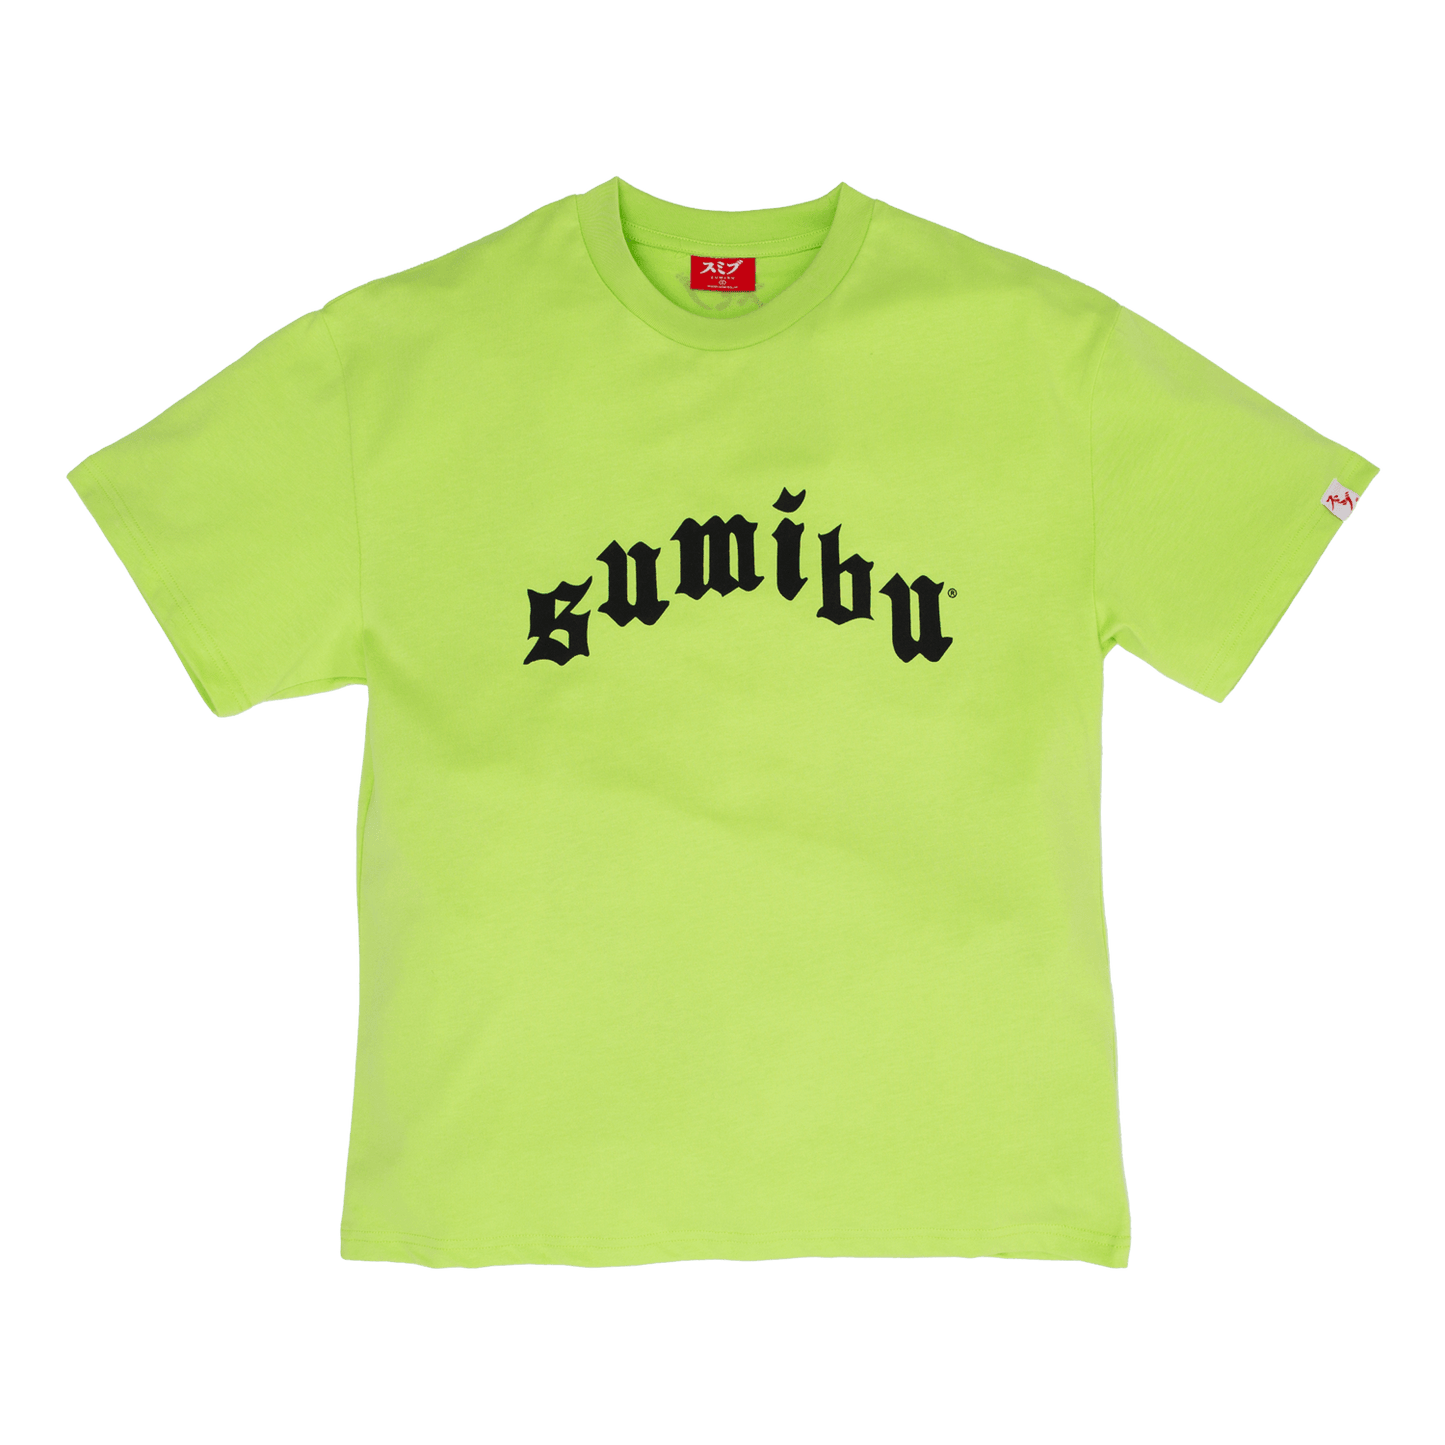 Ol' Sumibu Tee | Neon Green - Black